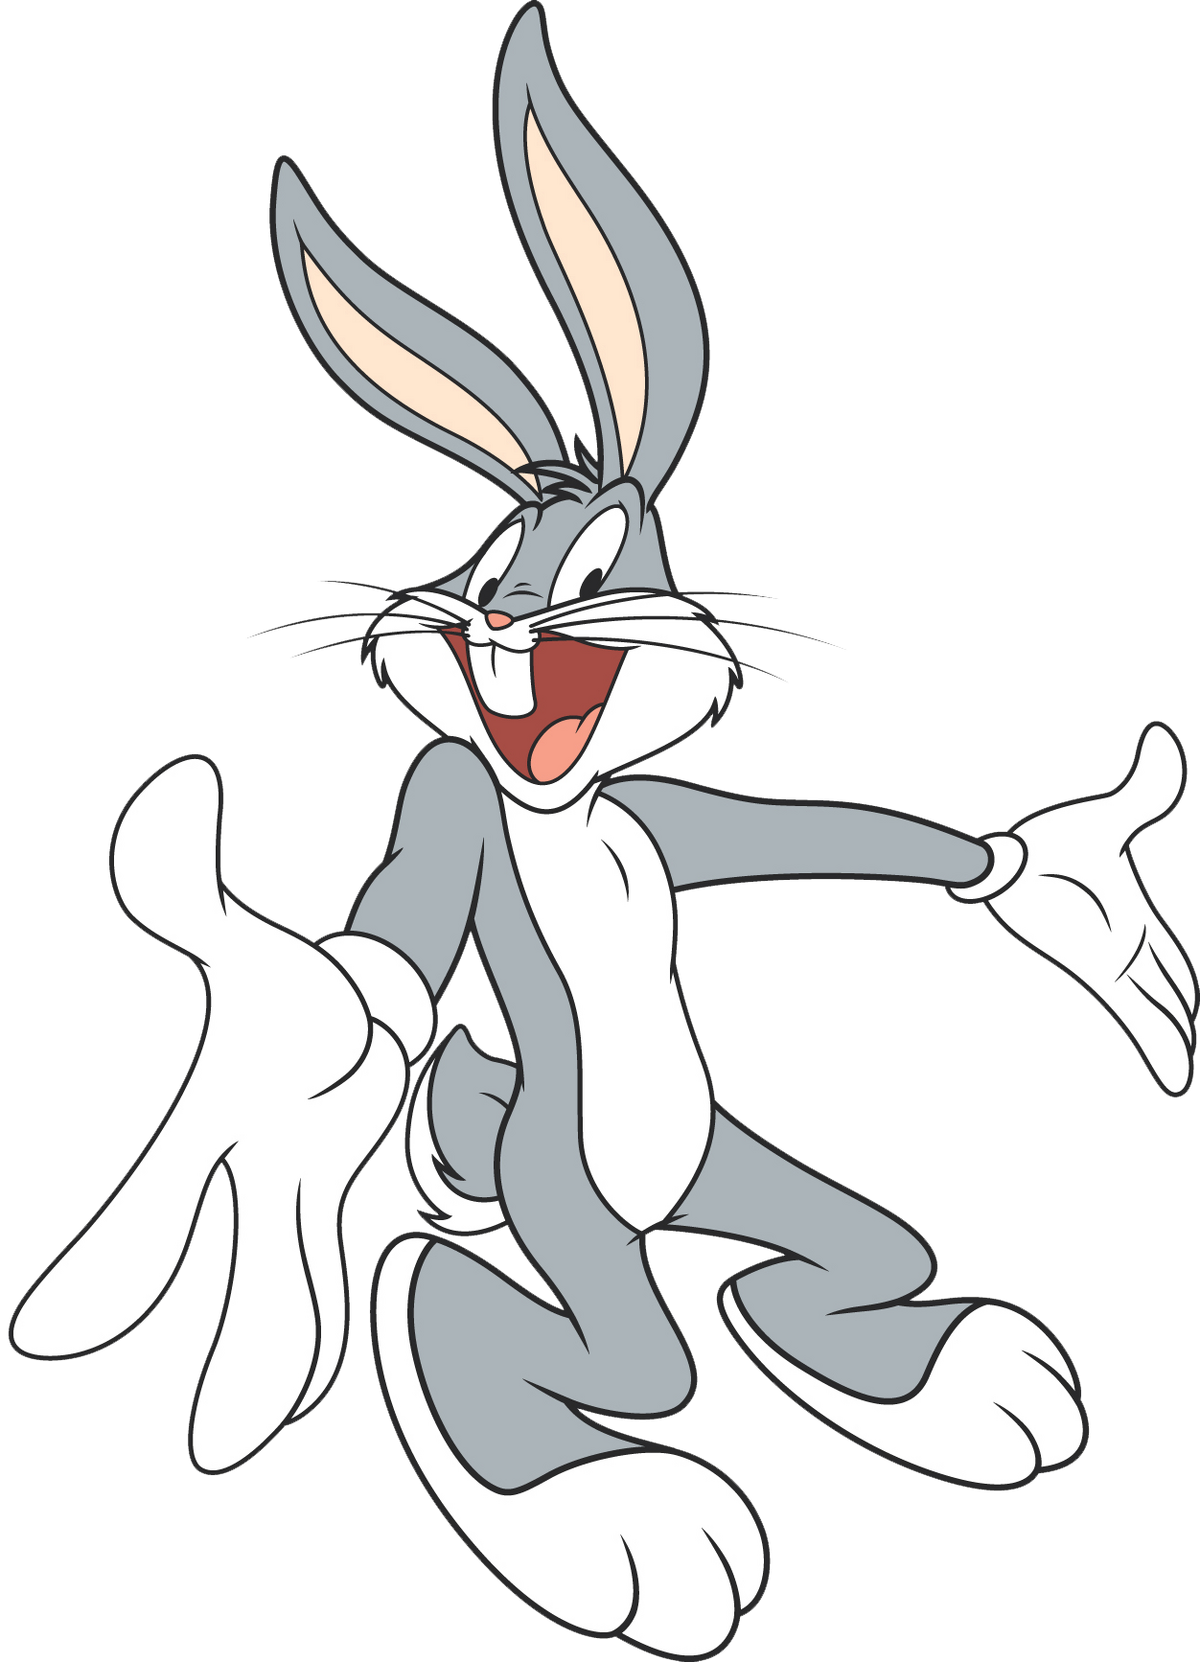 Песня заяц бакс бани. Кролик Багз Банни. Багз заяц заяц Банни. Луни Тюнз кролик Багз Банни. Б̆̈ӑ̈к̆̈с̆̈ б̆̈ӑ̈н̆̈н̆̈й̈.